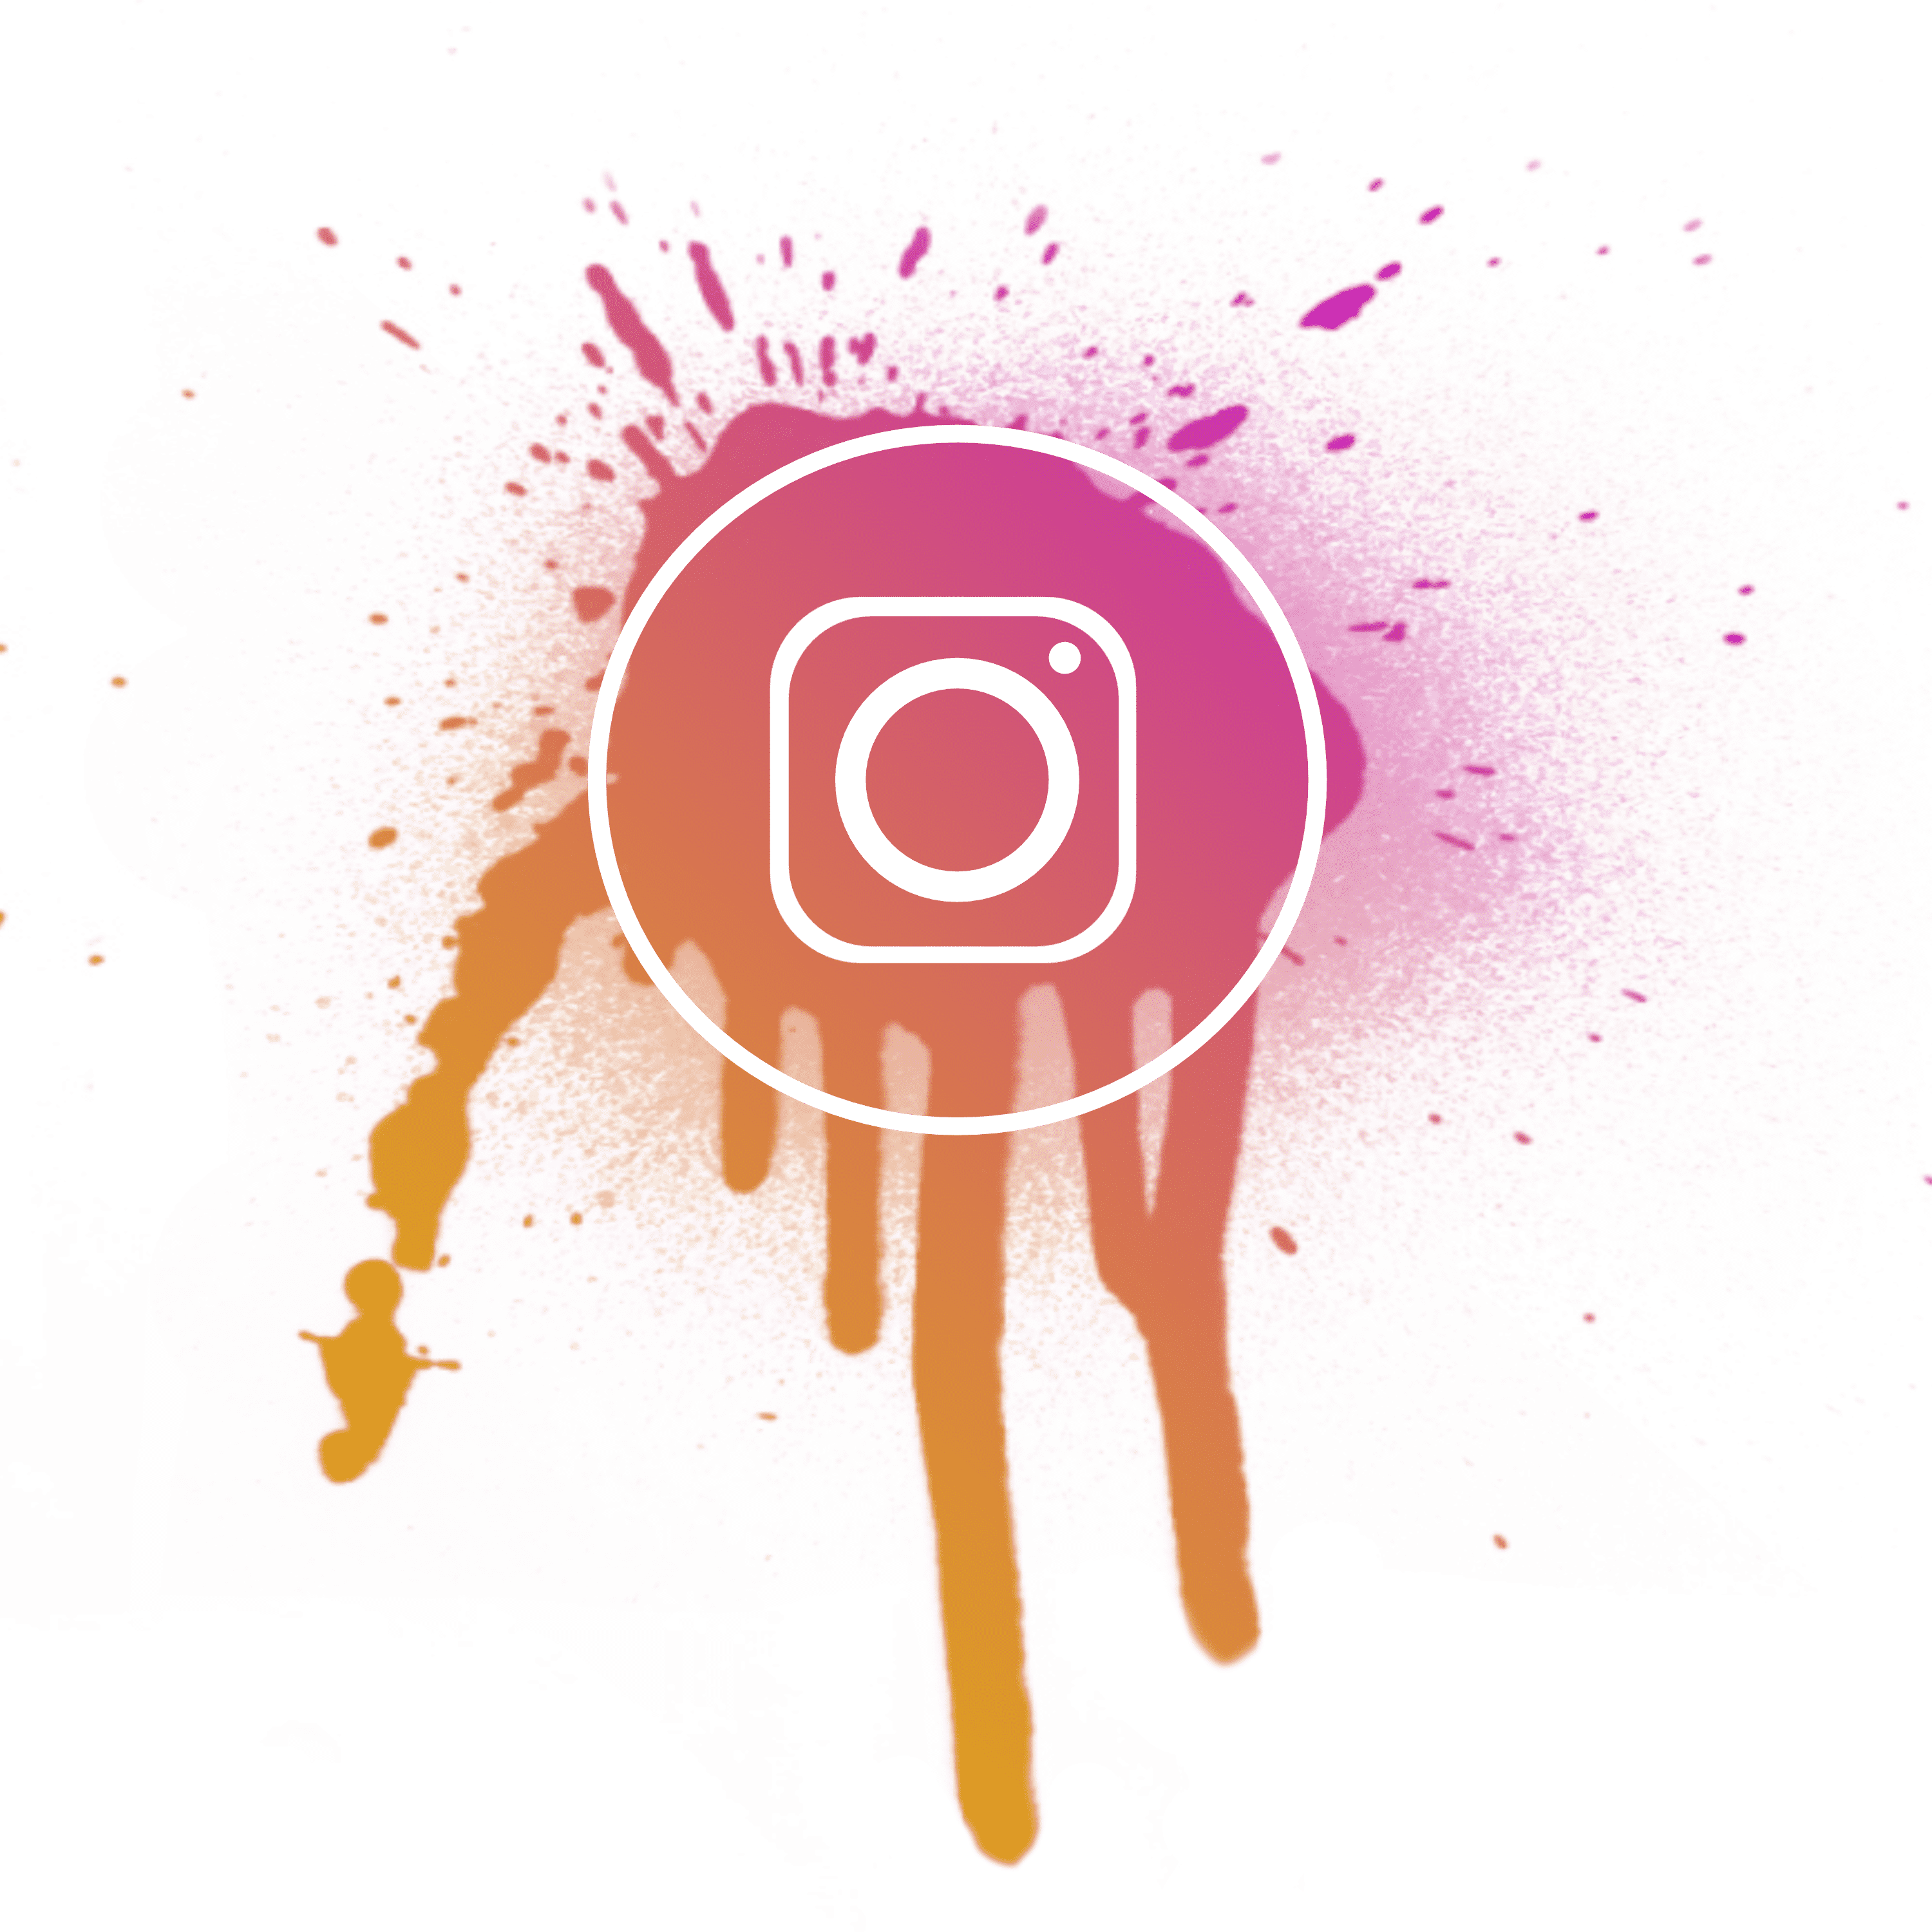 عکس لوگو اینستاگرام برای طراحی در فتوشاپ و اینشات بدون پس زمینه